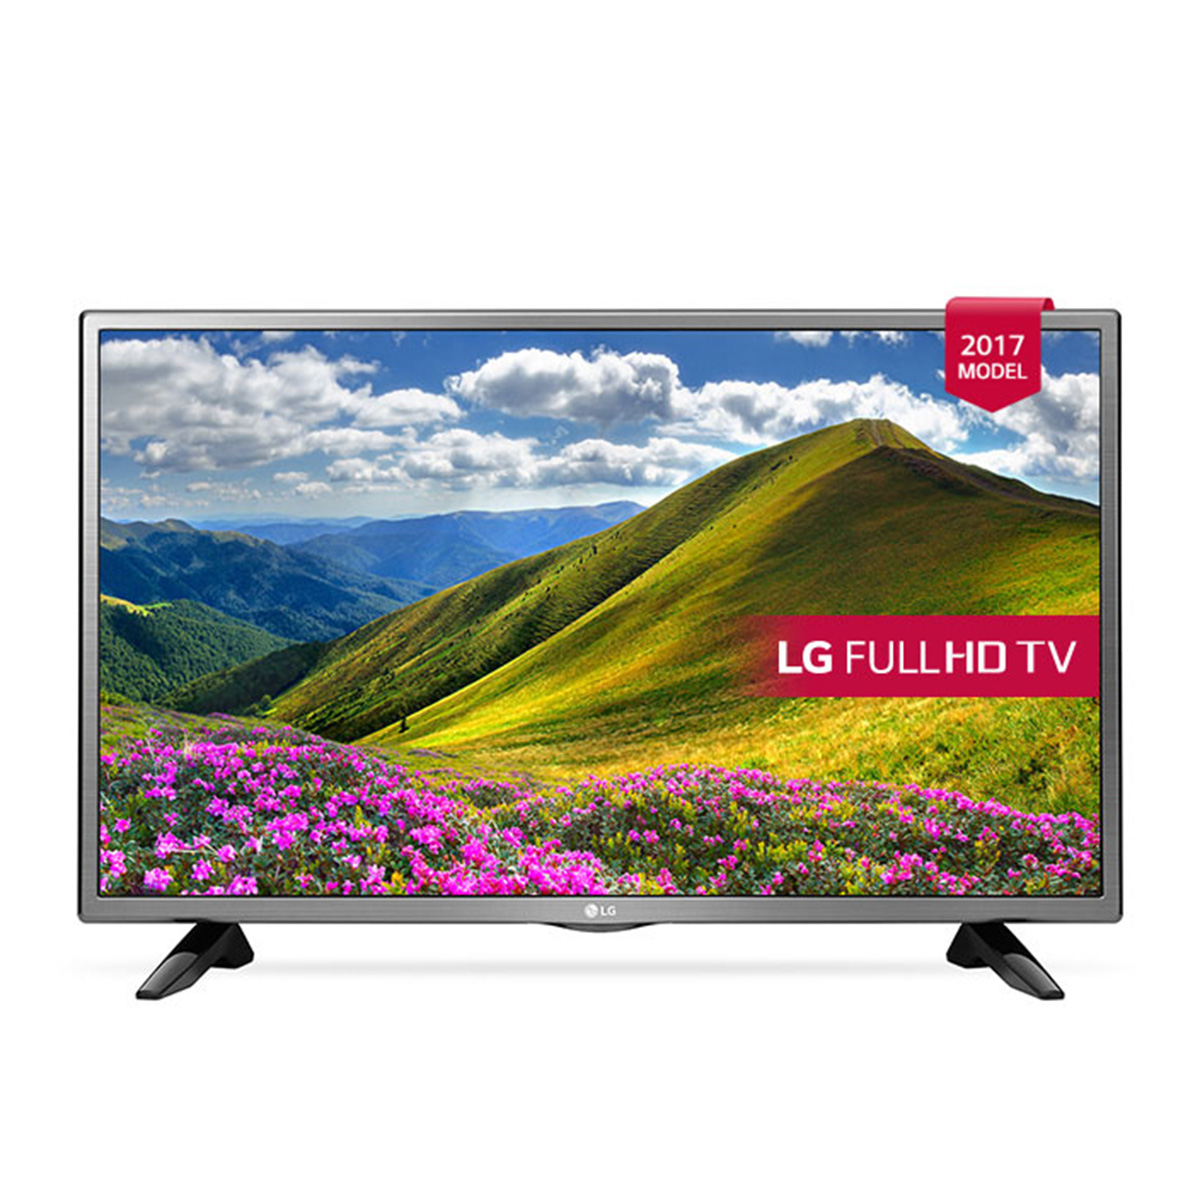 Купить дешевле 43. Телевизор LG 43lj519v 43" (2017). Телевизор LG 32lj519u 32" (2017). Телевизор LG 32lj600u 32" (2017). Телевизор LG 32lm550b.